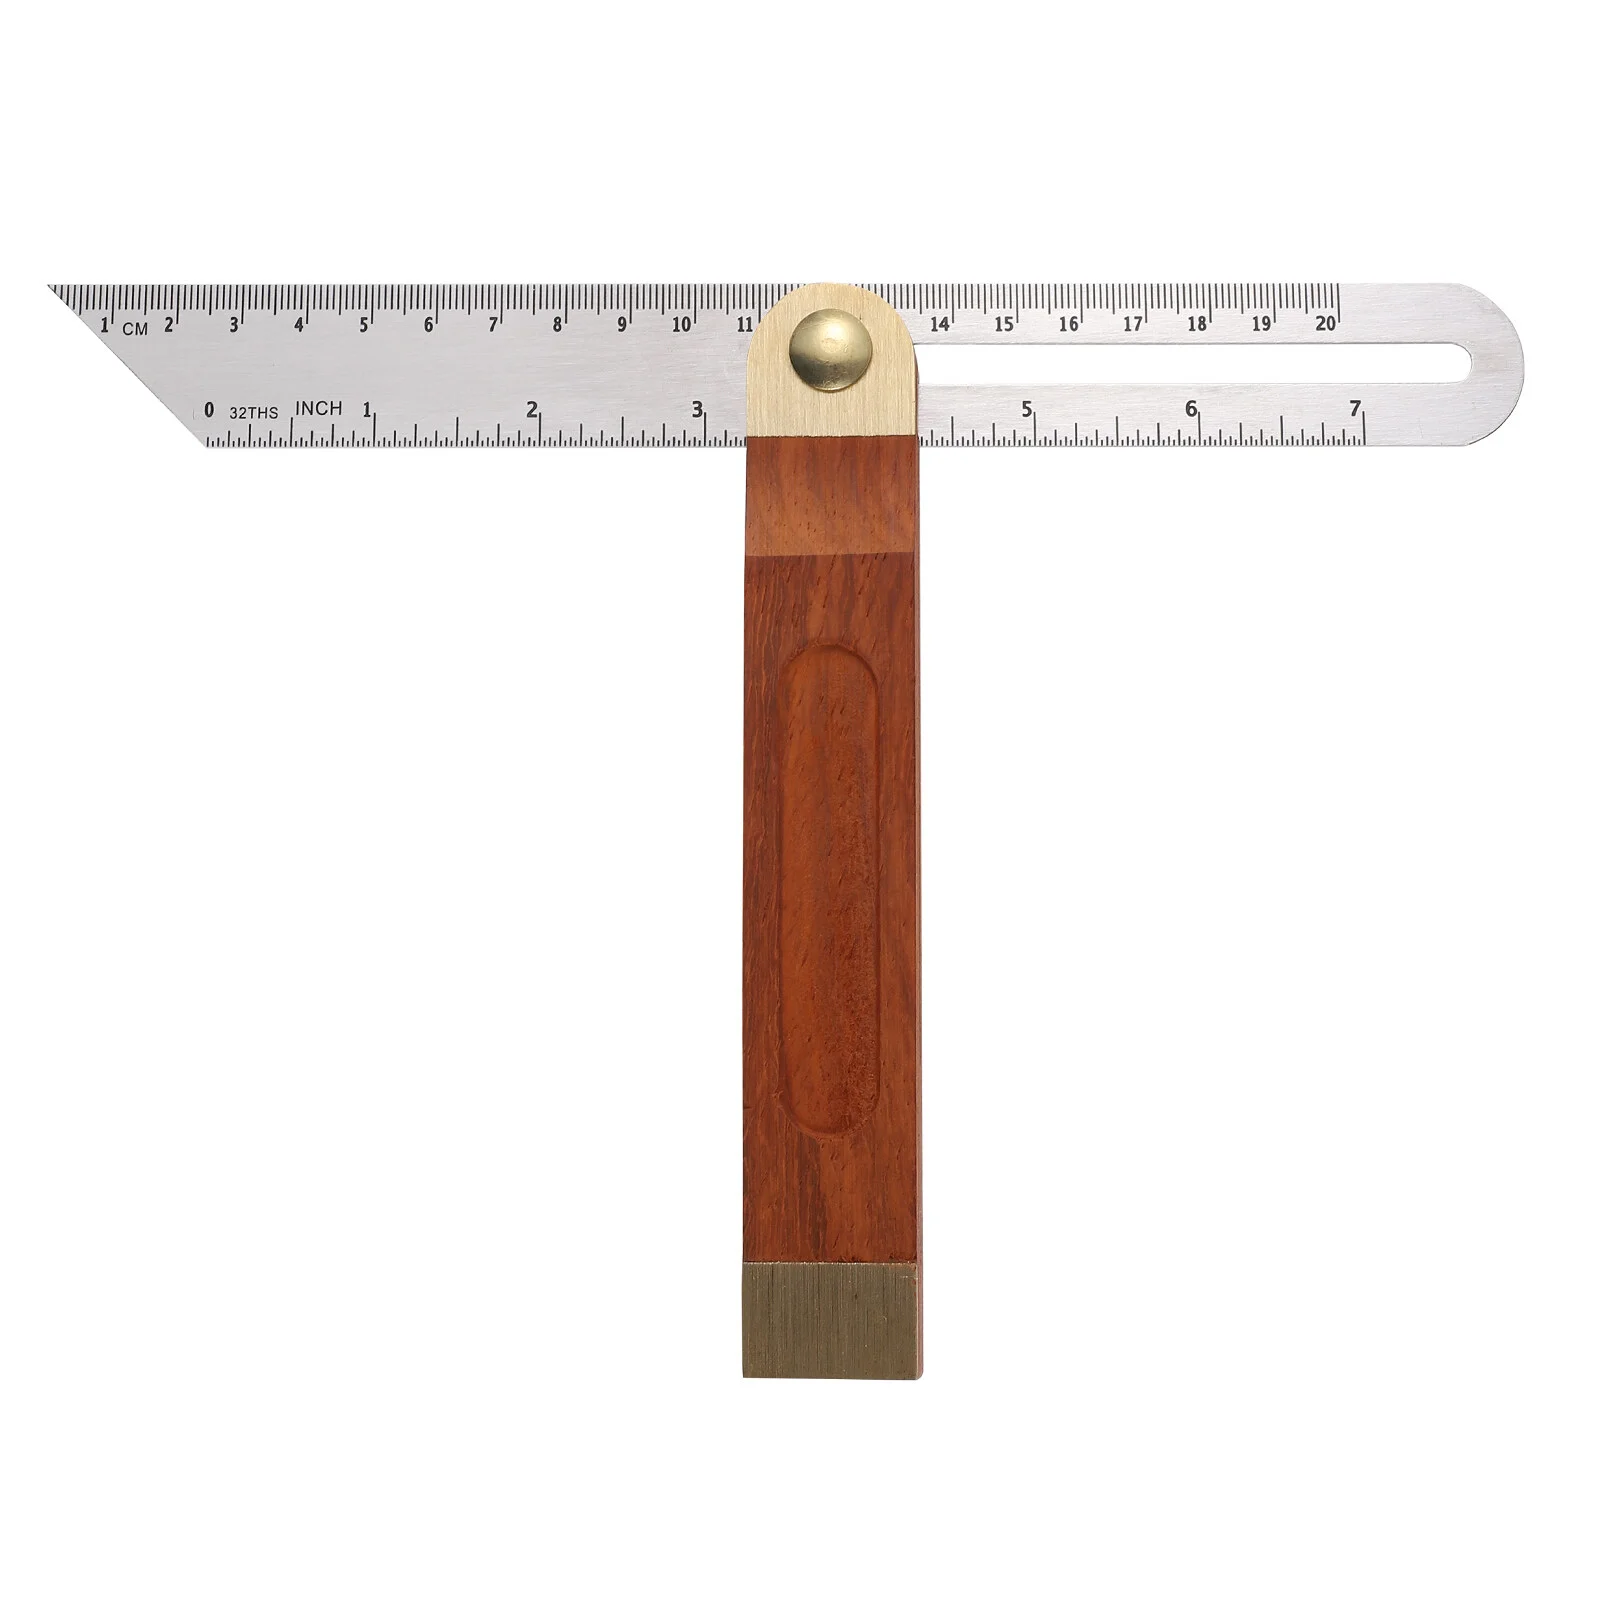 

Square Foot Sliding T-Bevel Gauge Measurement Tool Adjustable Wooden Handle 9" Angle Finder Protractor Ruler Pocket Tools